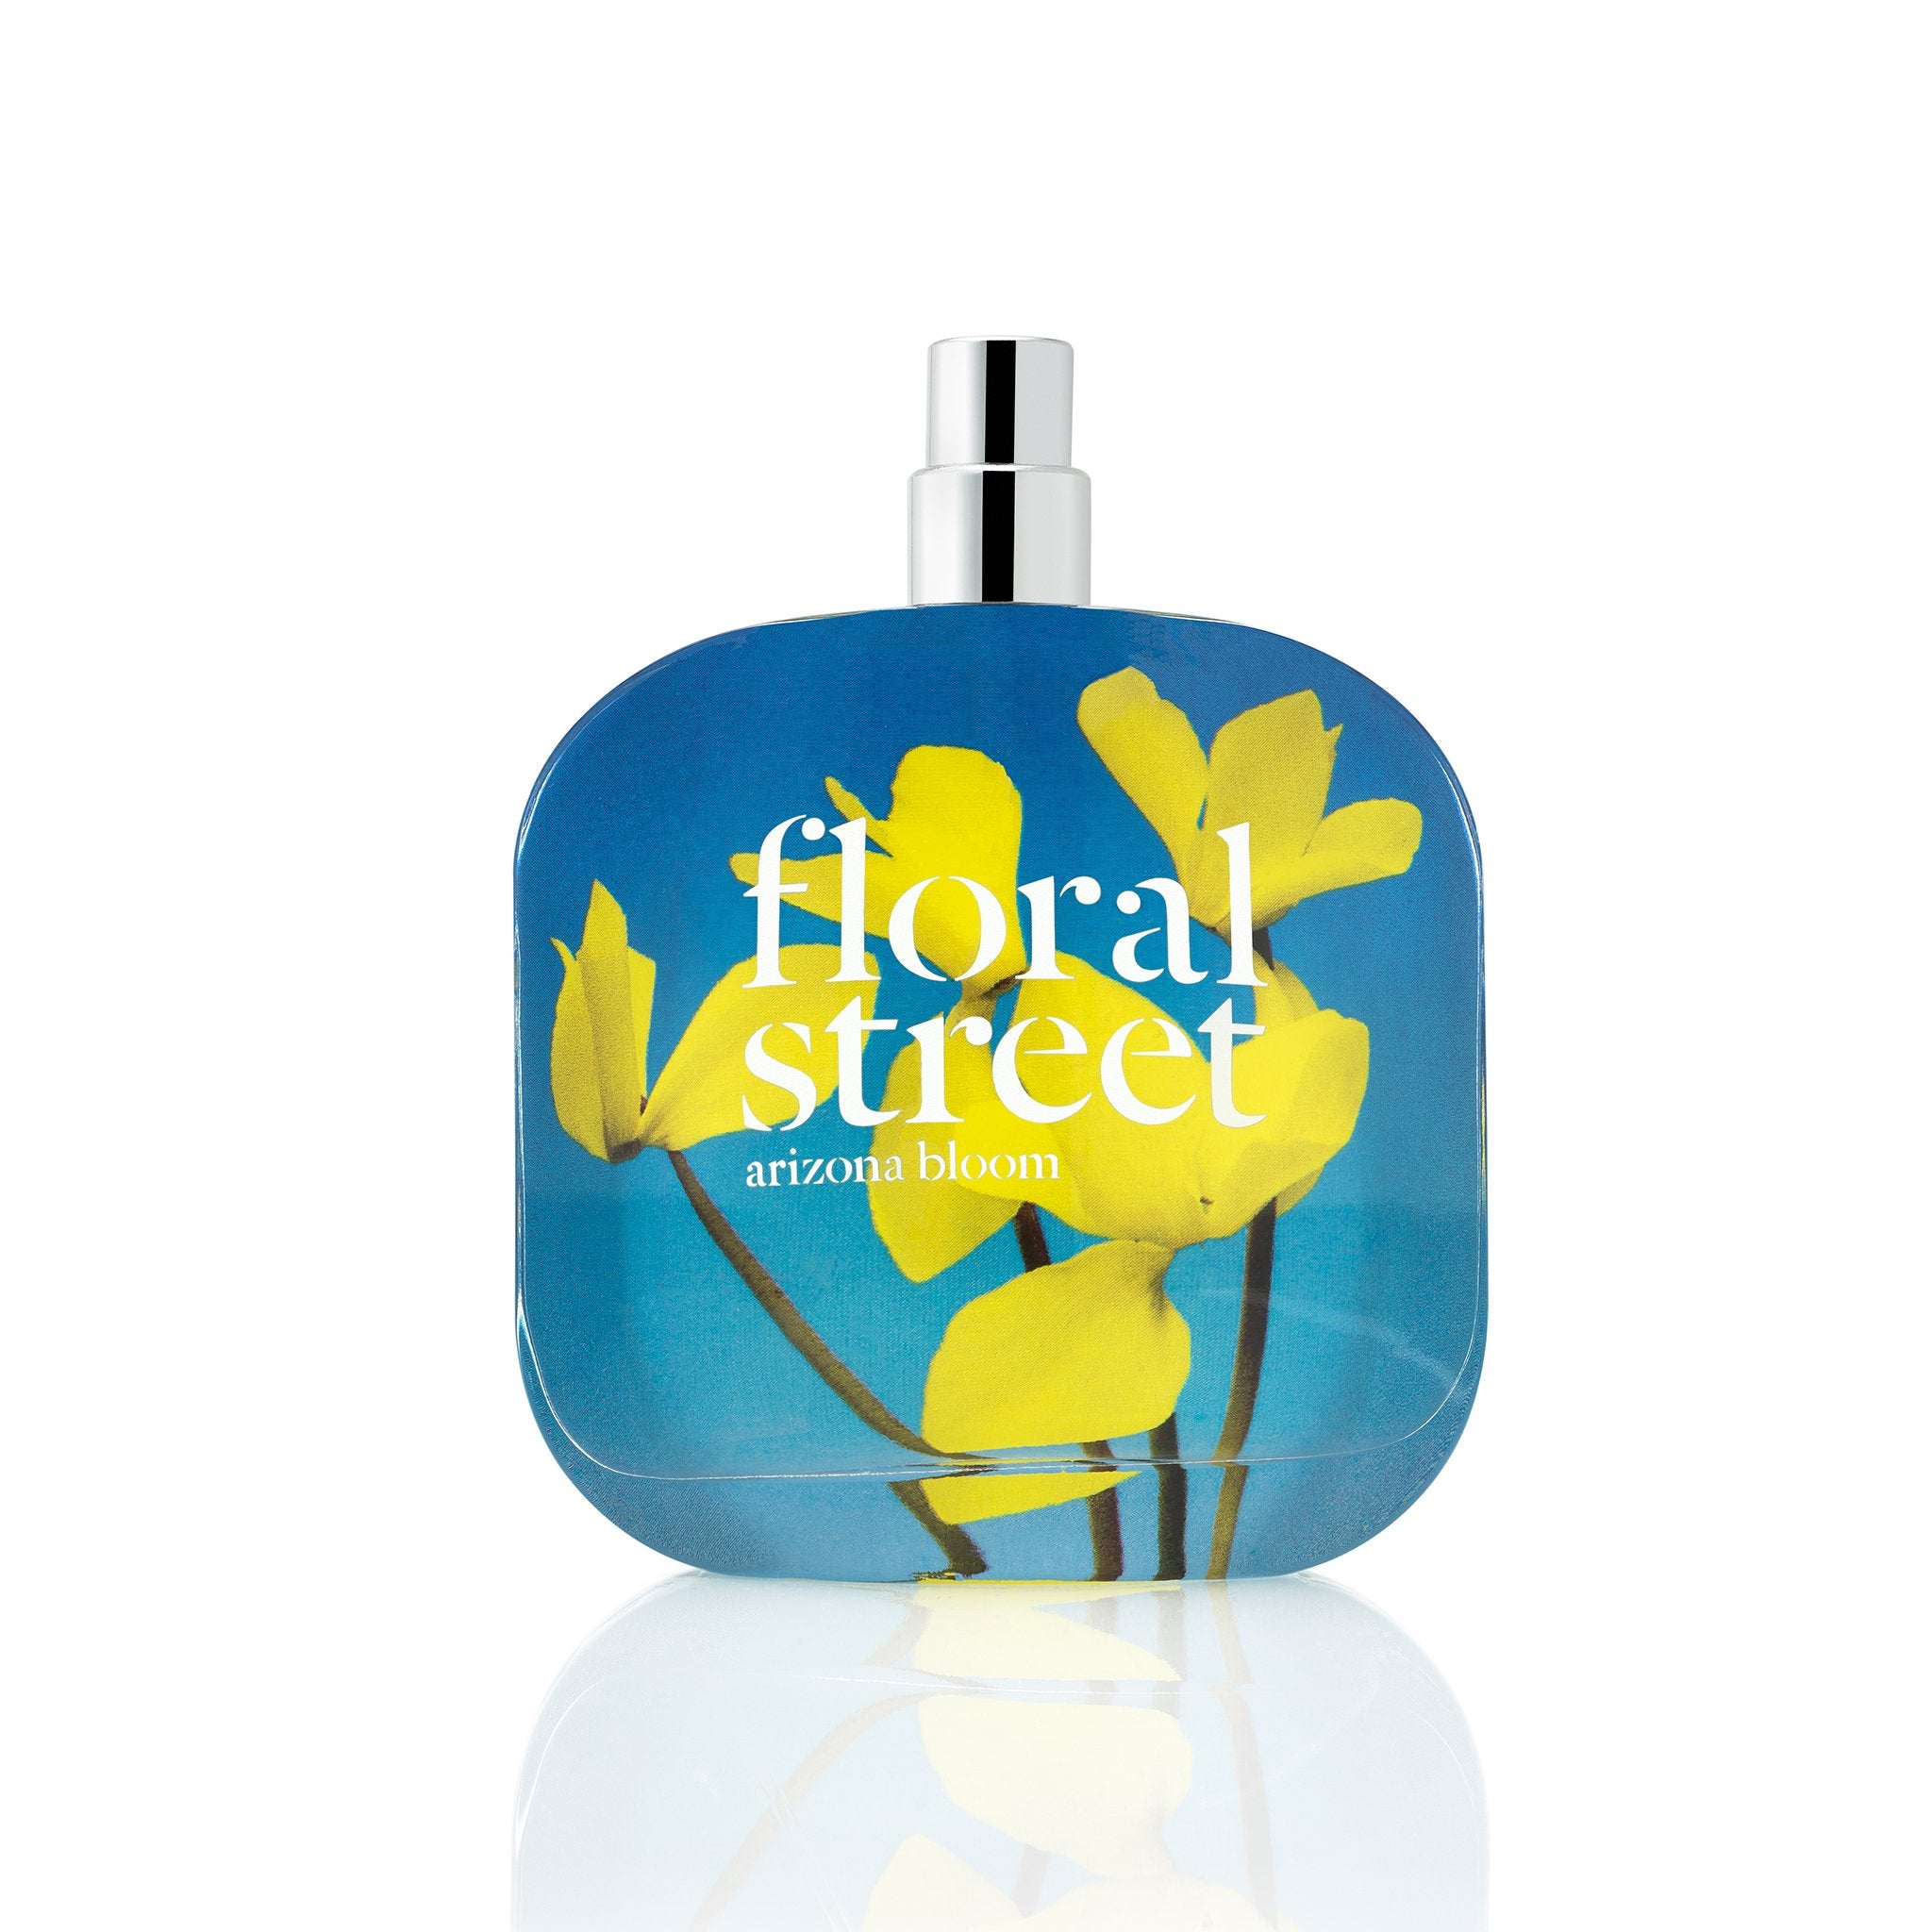 Floral Street arizona bloom eau de parfum